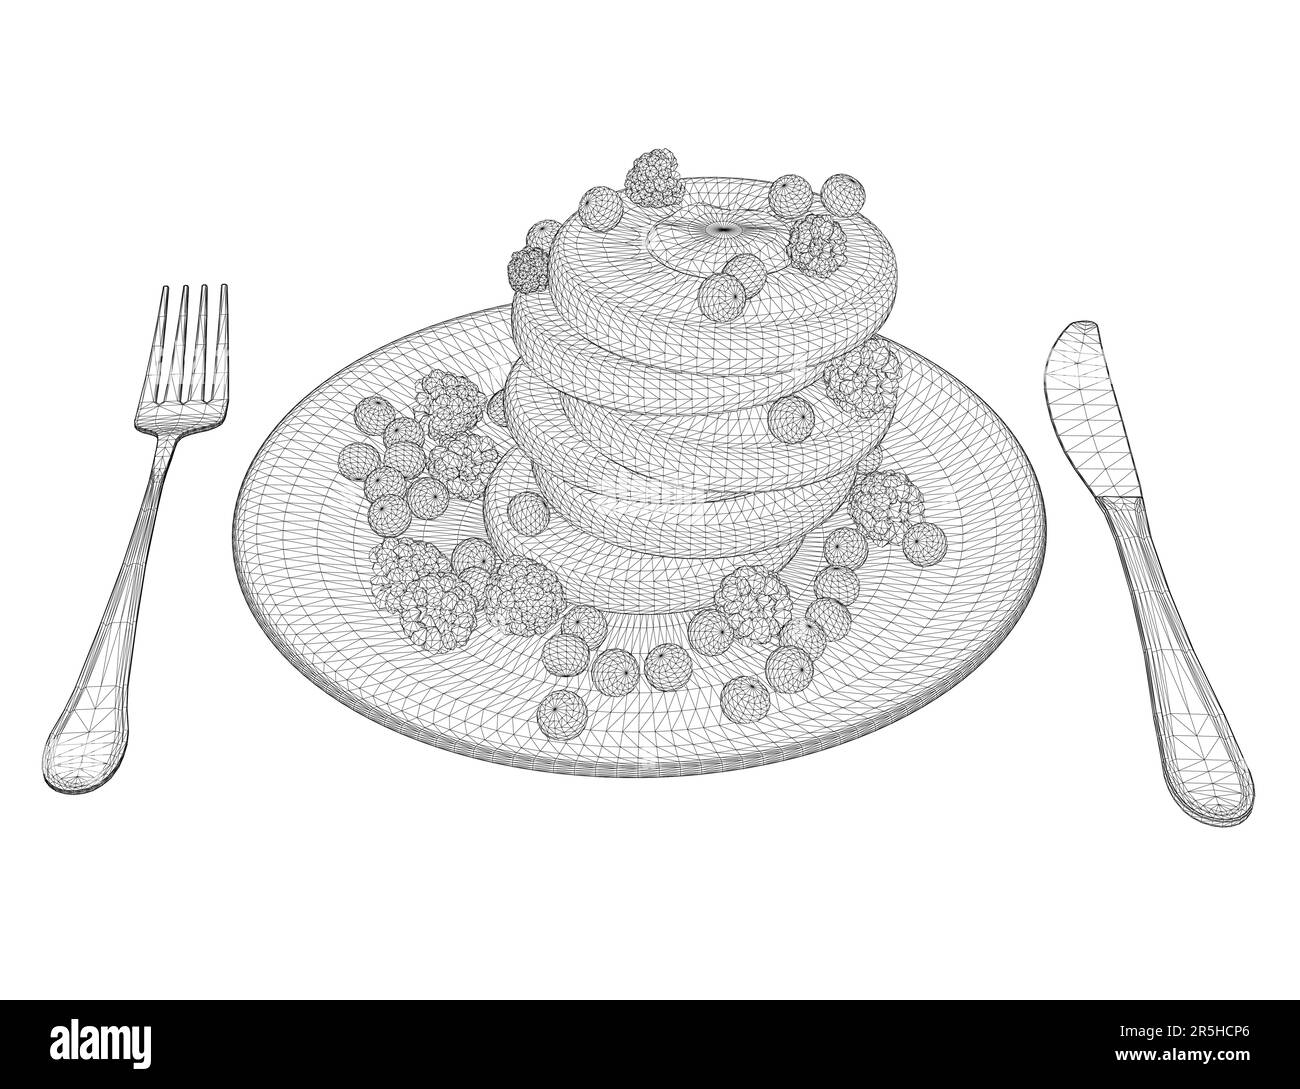 Drahtmodell aus Keksen mit Beeren auf einem Teller mit Löffel und Gabel, mit schwarzen Linien isoliert auf weißem Hintergrund. Nachtisch mit Himbeeren. Isometri Stock Vektor